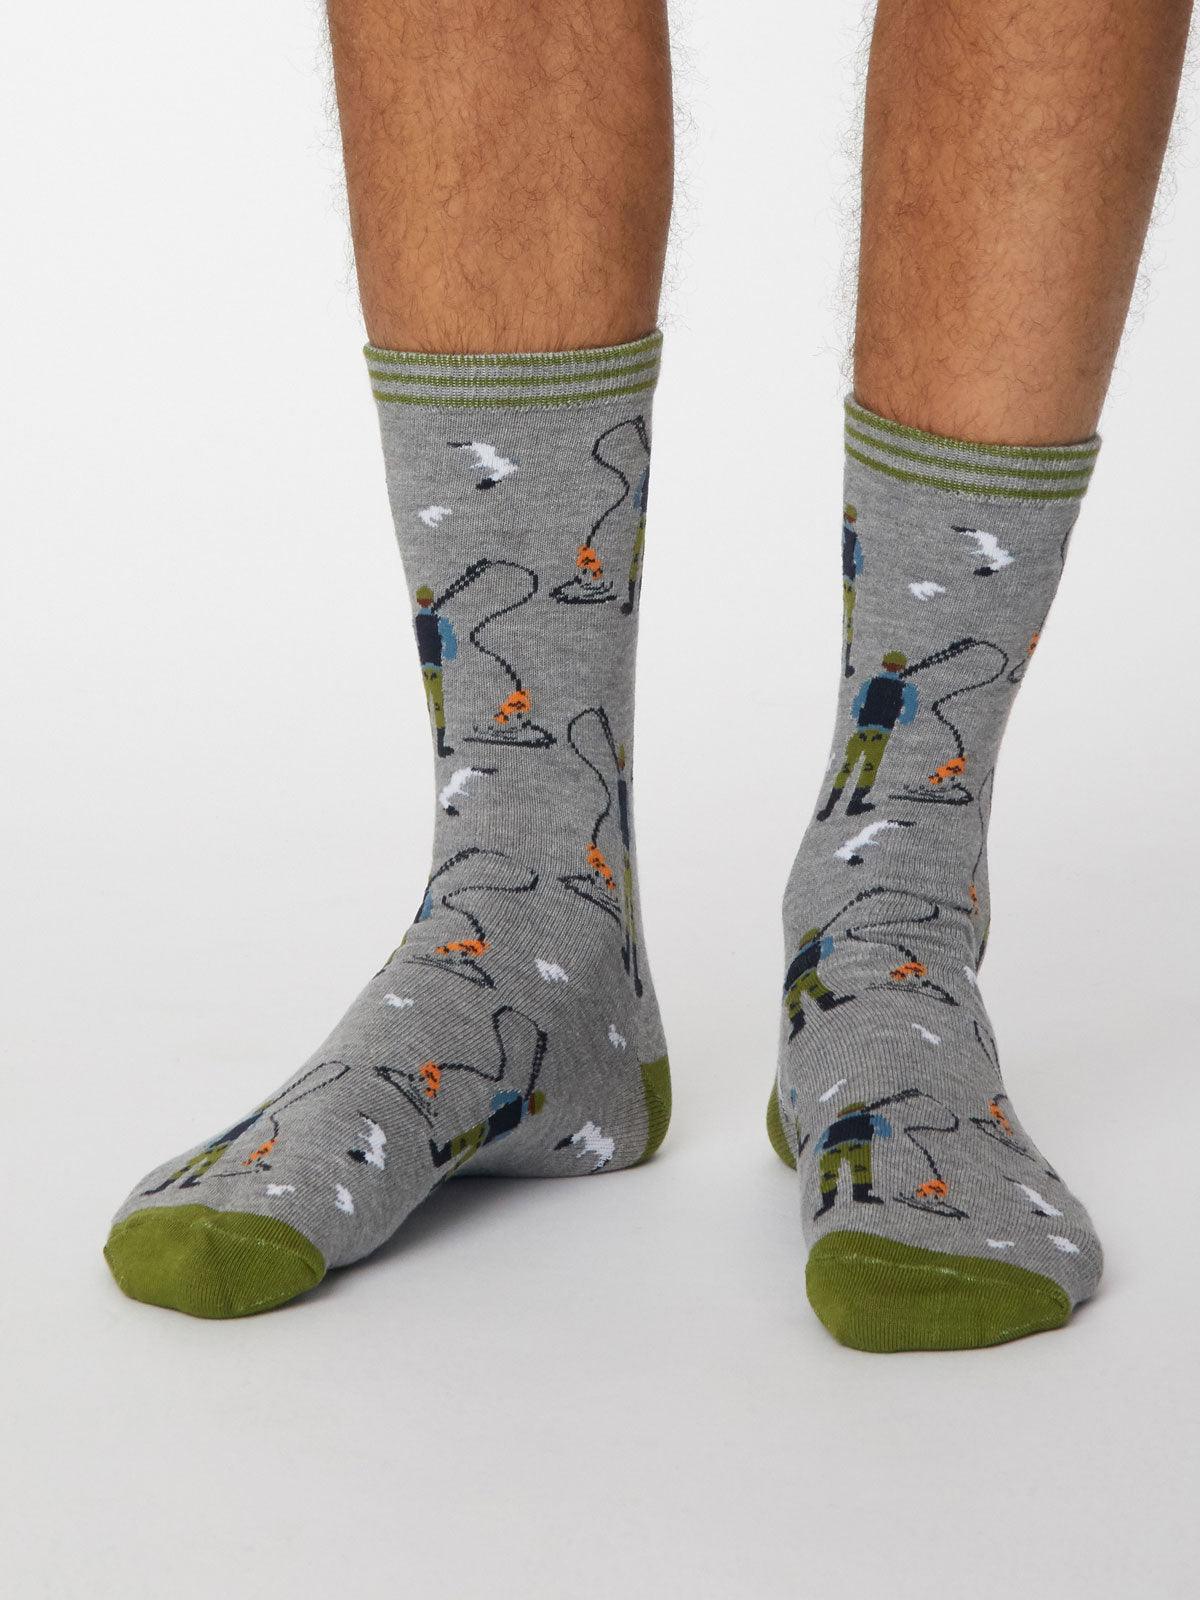 Pesca Socks - Mid Grey Marle - Thought Clothing UK